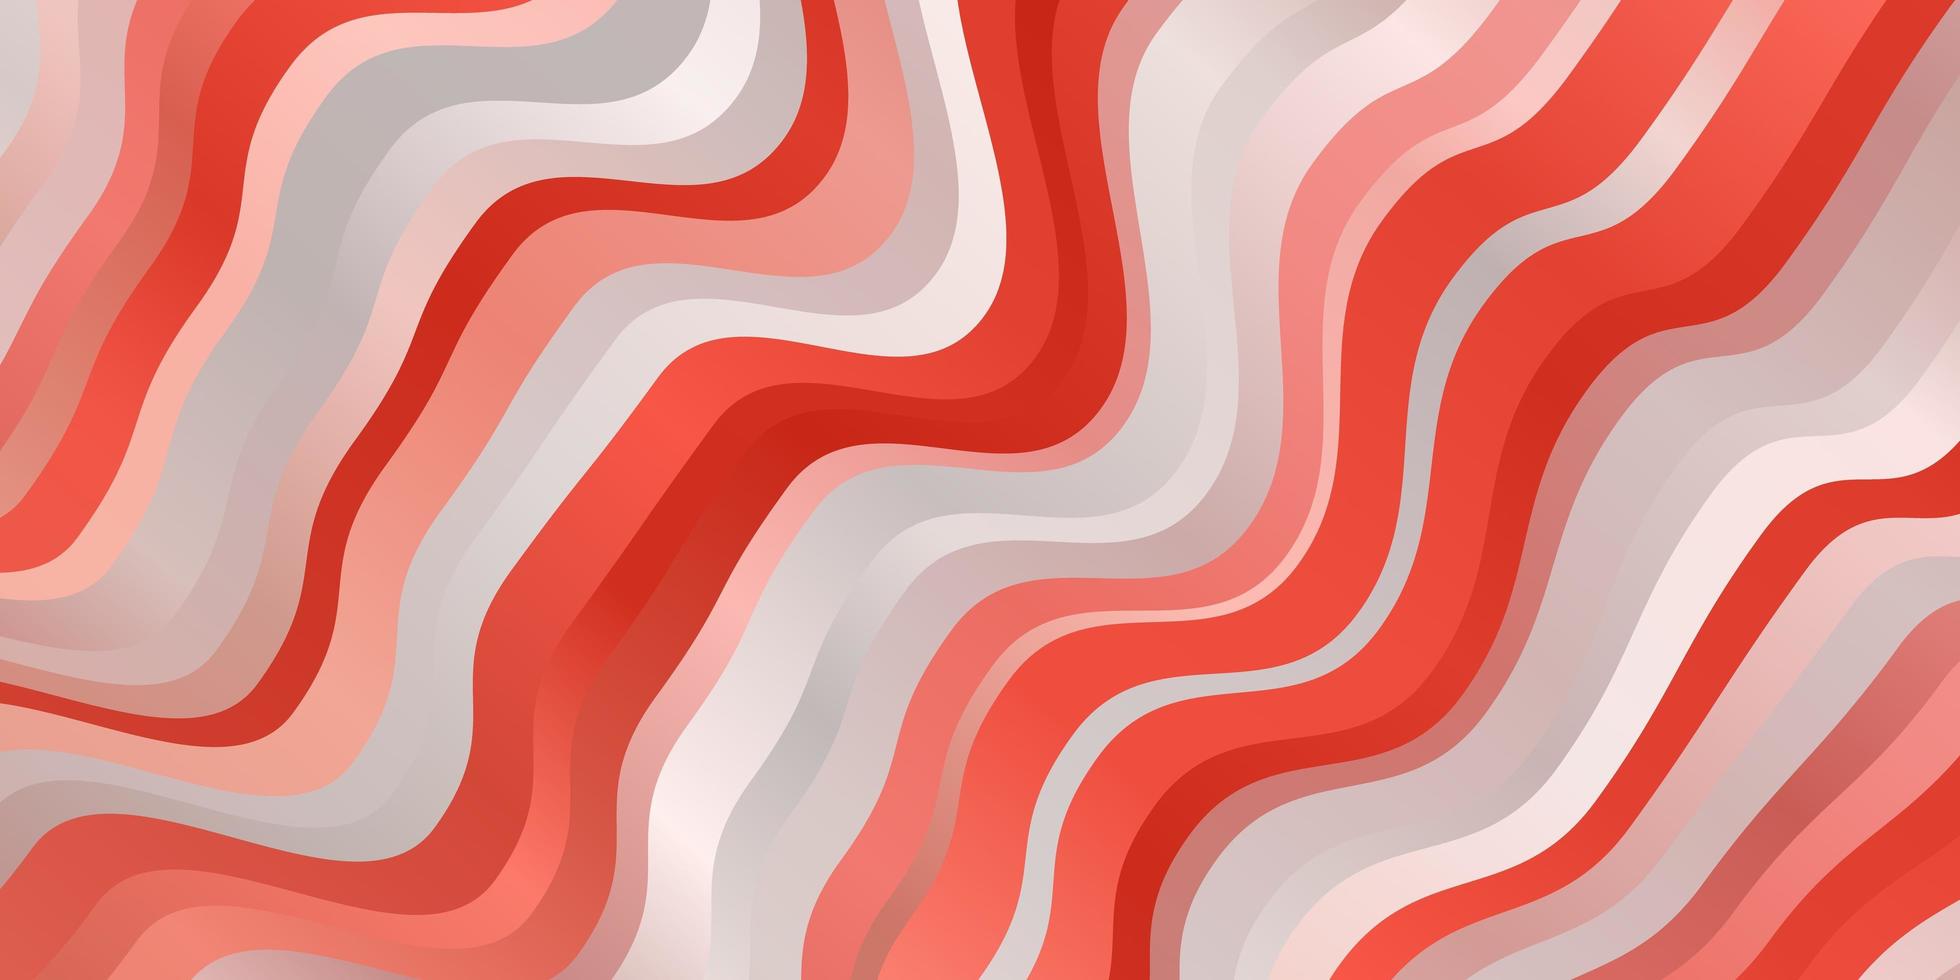 ljusröd vektorbakgrund med böjda linjer. illustration i abstrakt stil med krökt lutning. mönster för webbplatser, målsidor. vektor